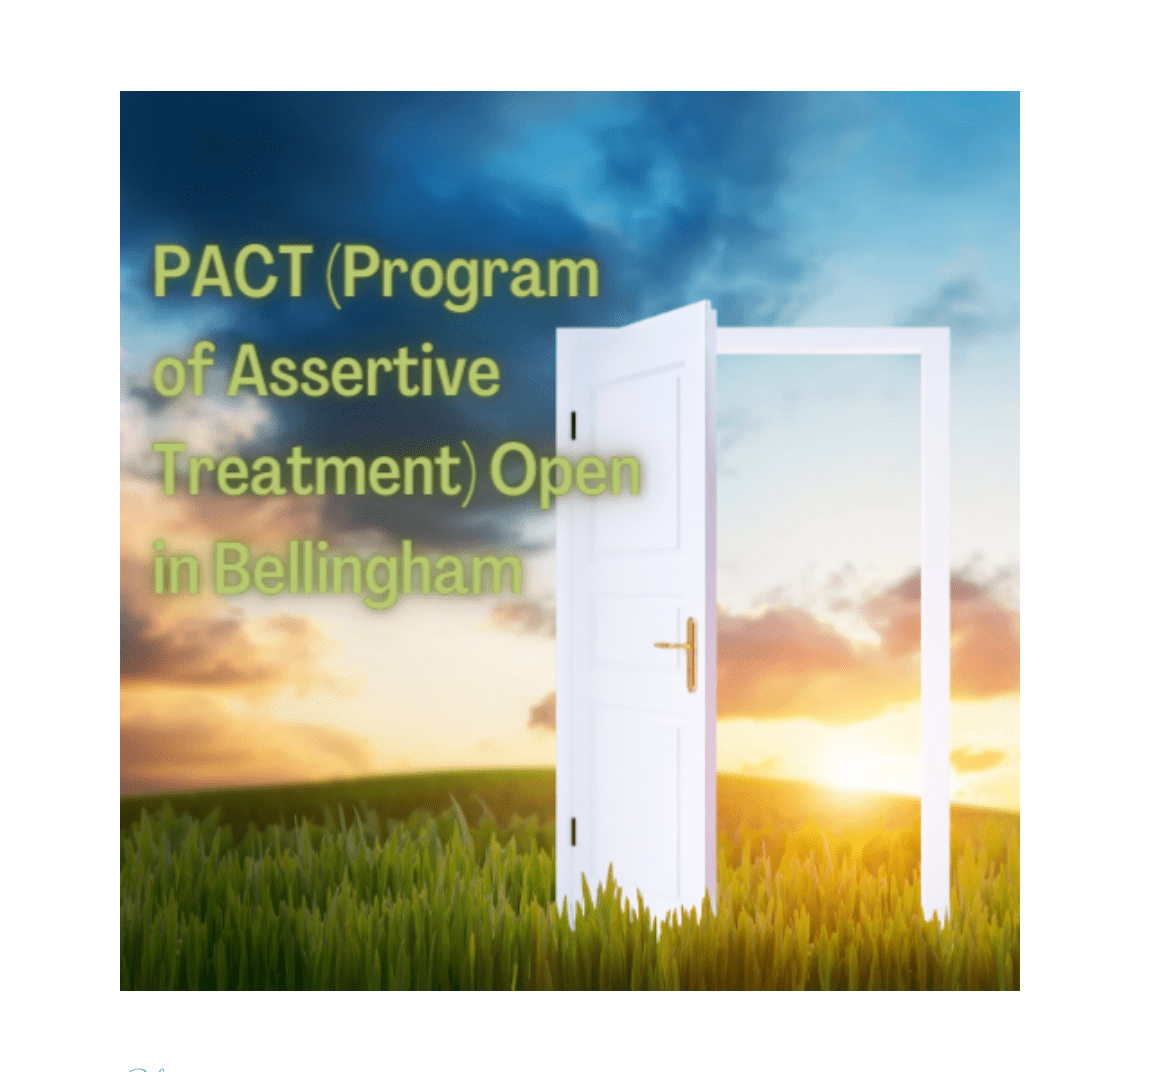 Las palabras "PACT Program of Assertive Treatment Open in Bellingham" en texto amarillo sobre una imagen de una puesta de sol con una puerta abierta